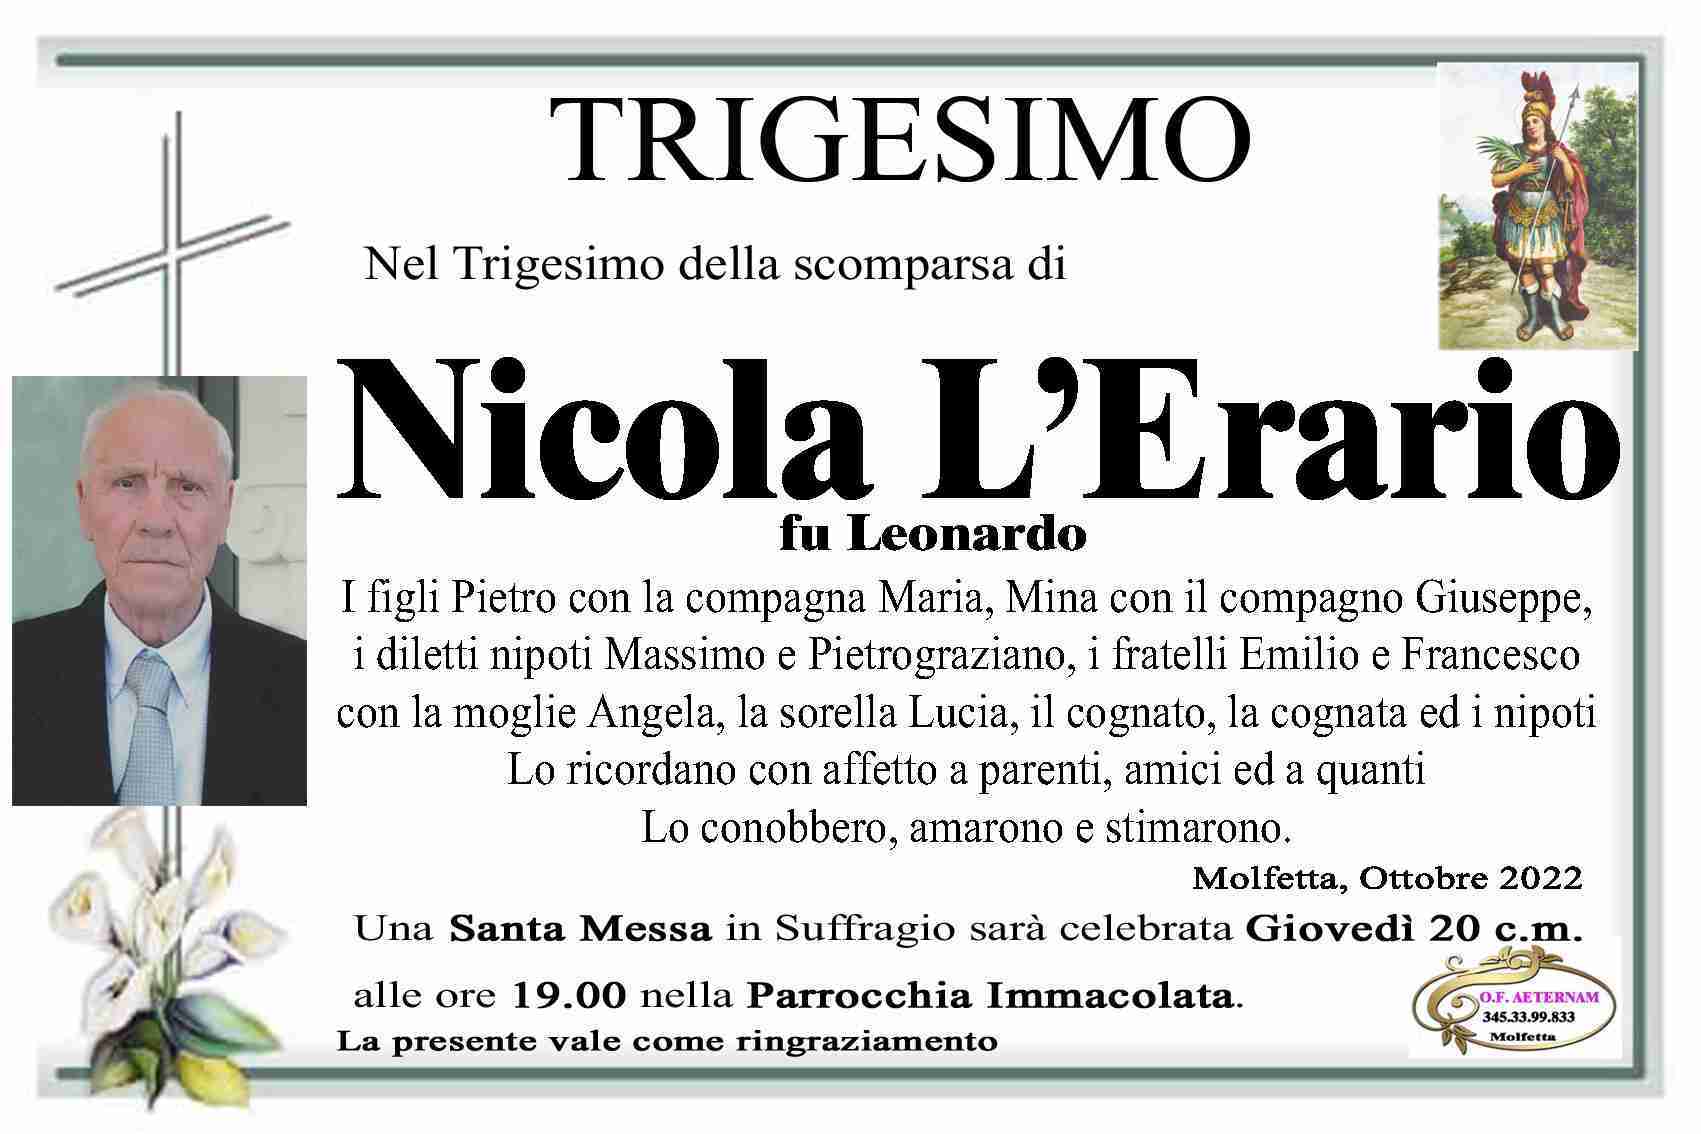 Nicola L'Erario